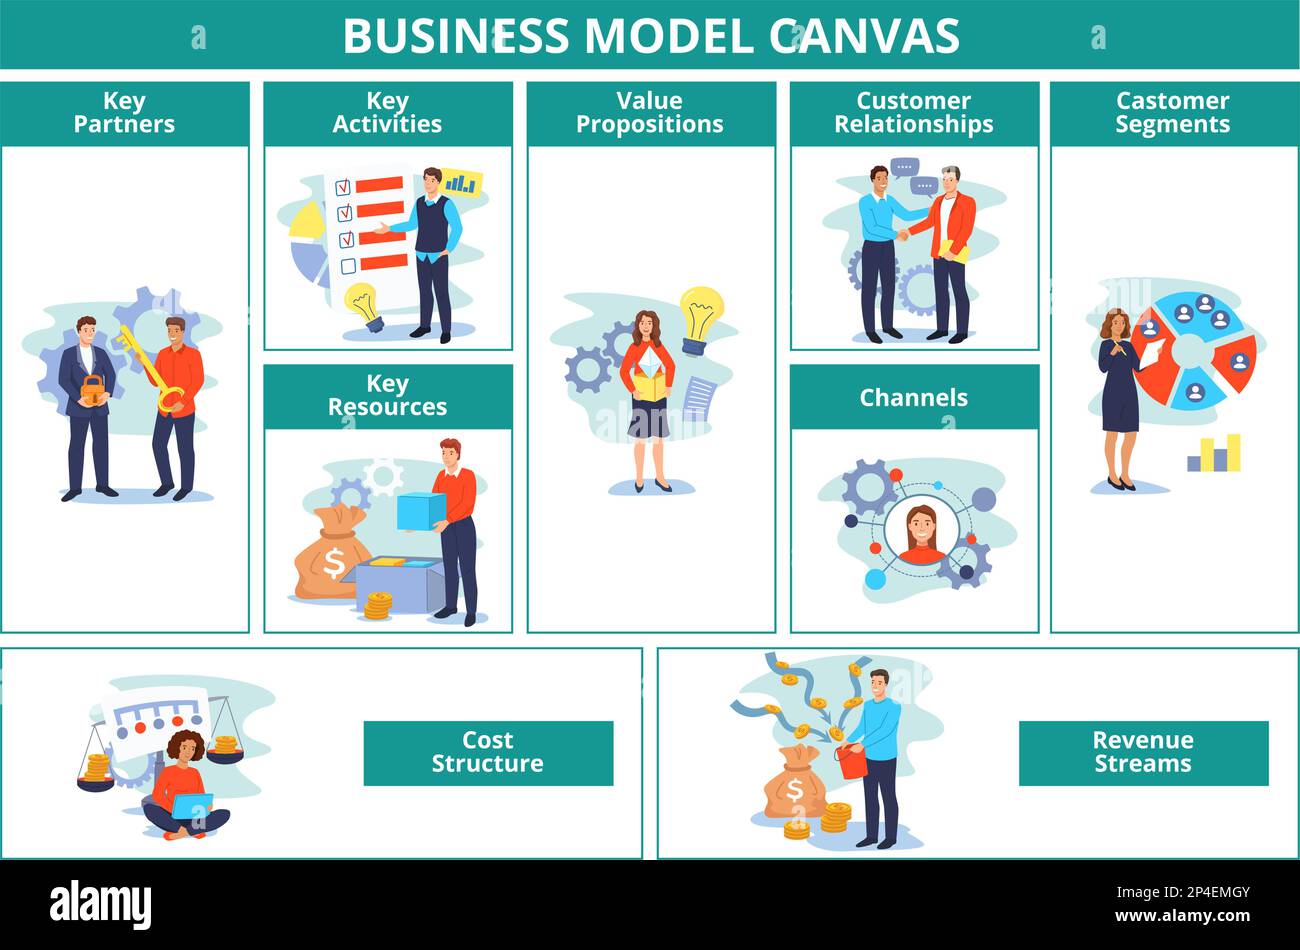 Modello aziendale. Modello di piano Canvas con partner, attività e risorse chiave. Proposte di valore, relazioni con i clienti, ricavi e costi Illustrazione Vettoriale